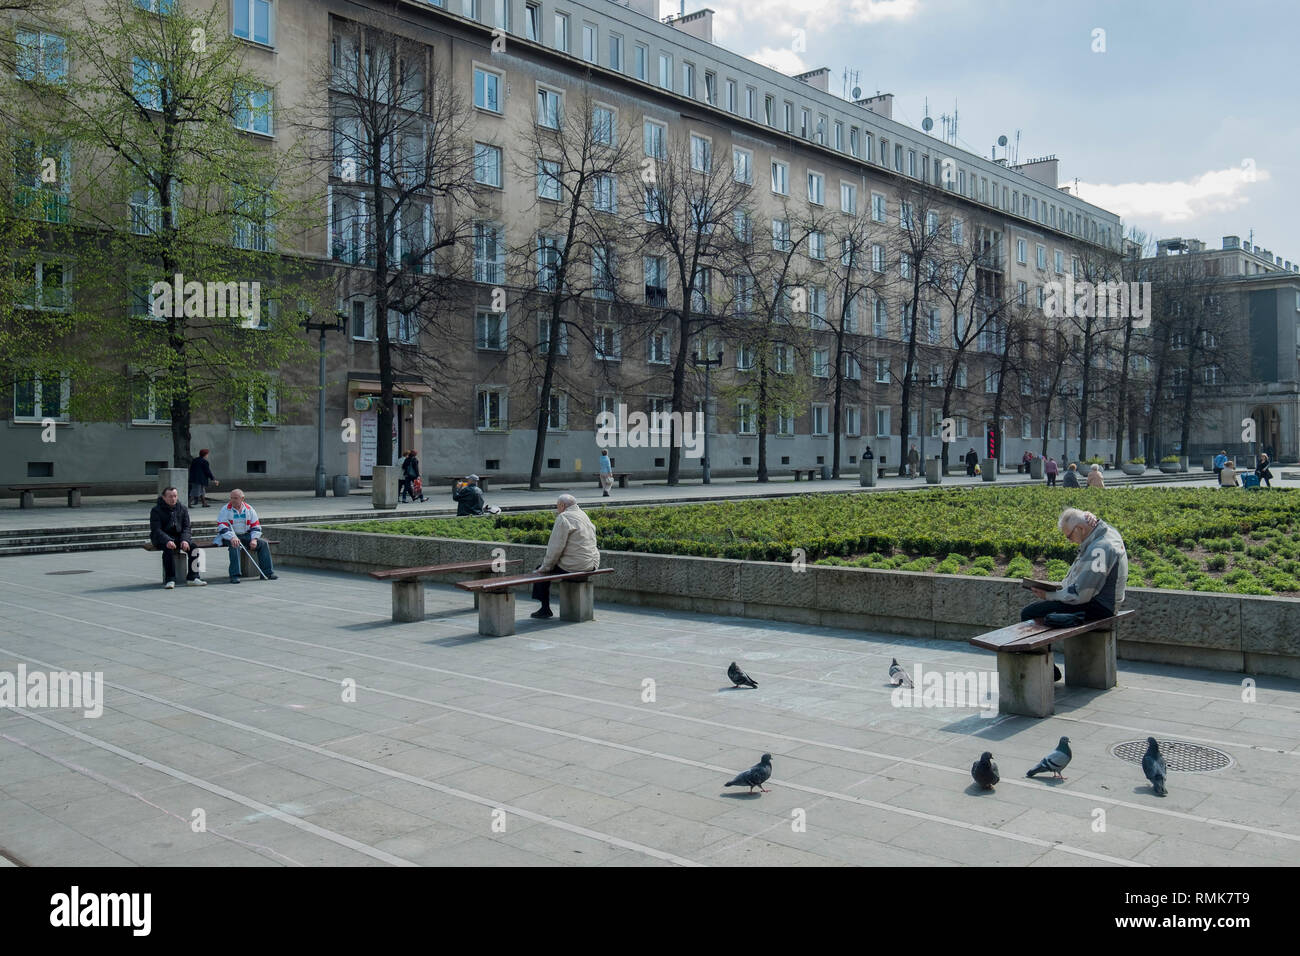 Ein Blick auf die Altstadt Apartment Blocks und Ausblicke in Nowa Huta, eine geplante sozialistische Stadt in Krakau, Polen. Stockfoto